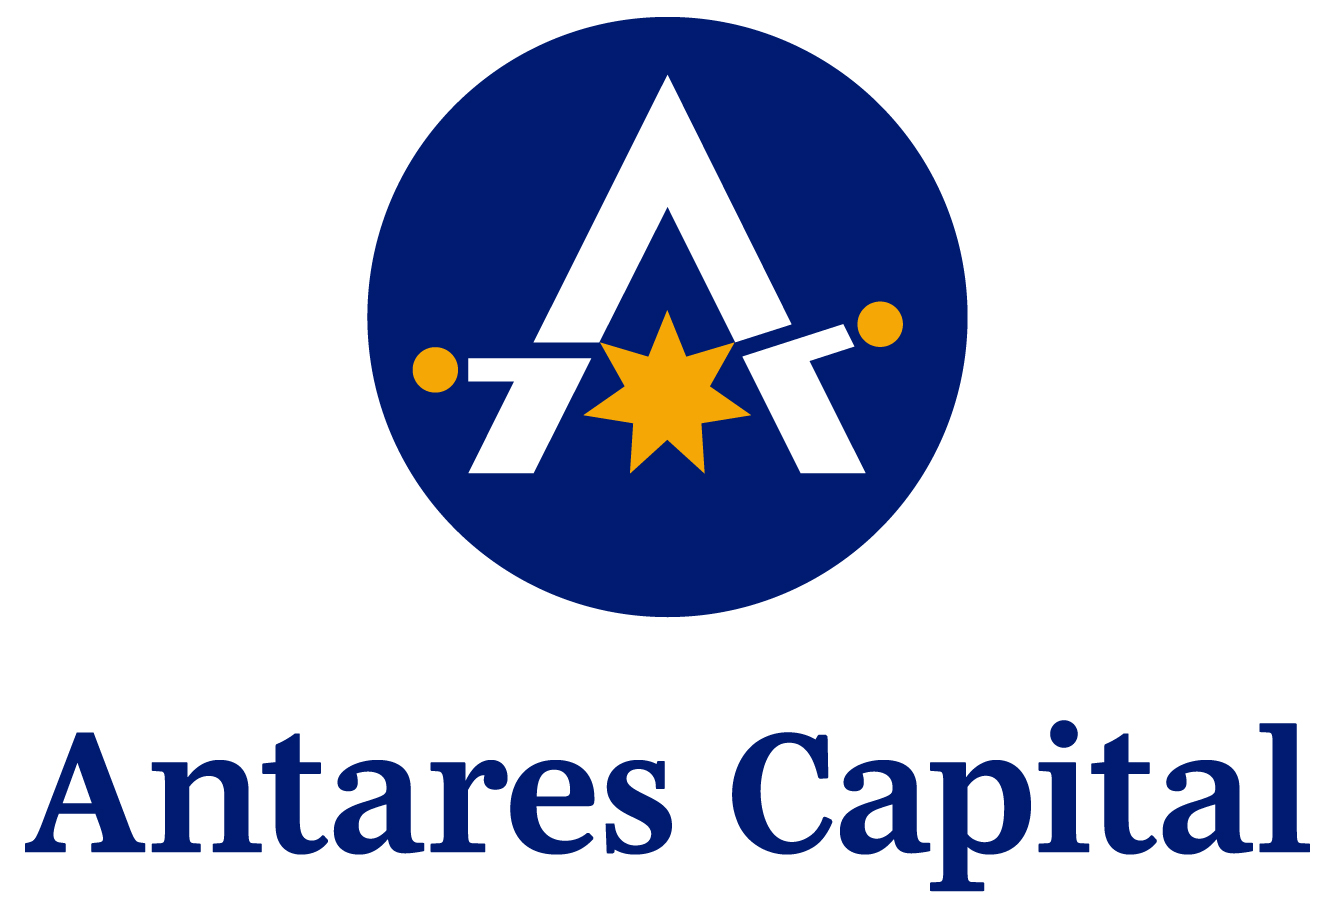 Antares Capital logo 1.25.24